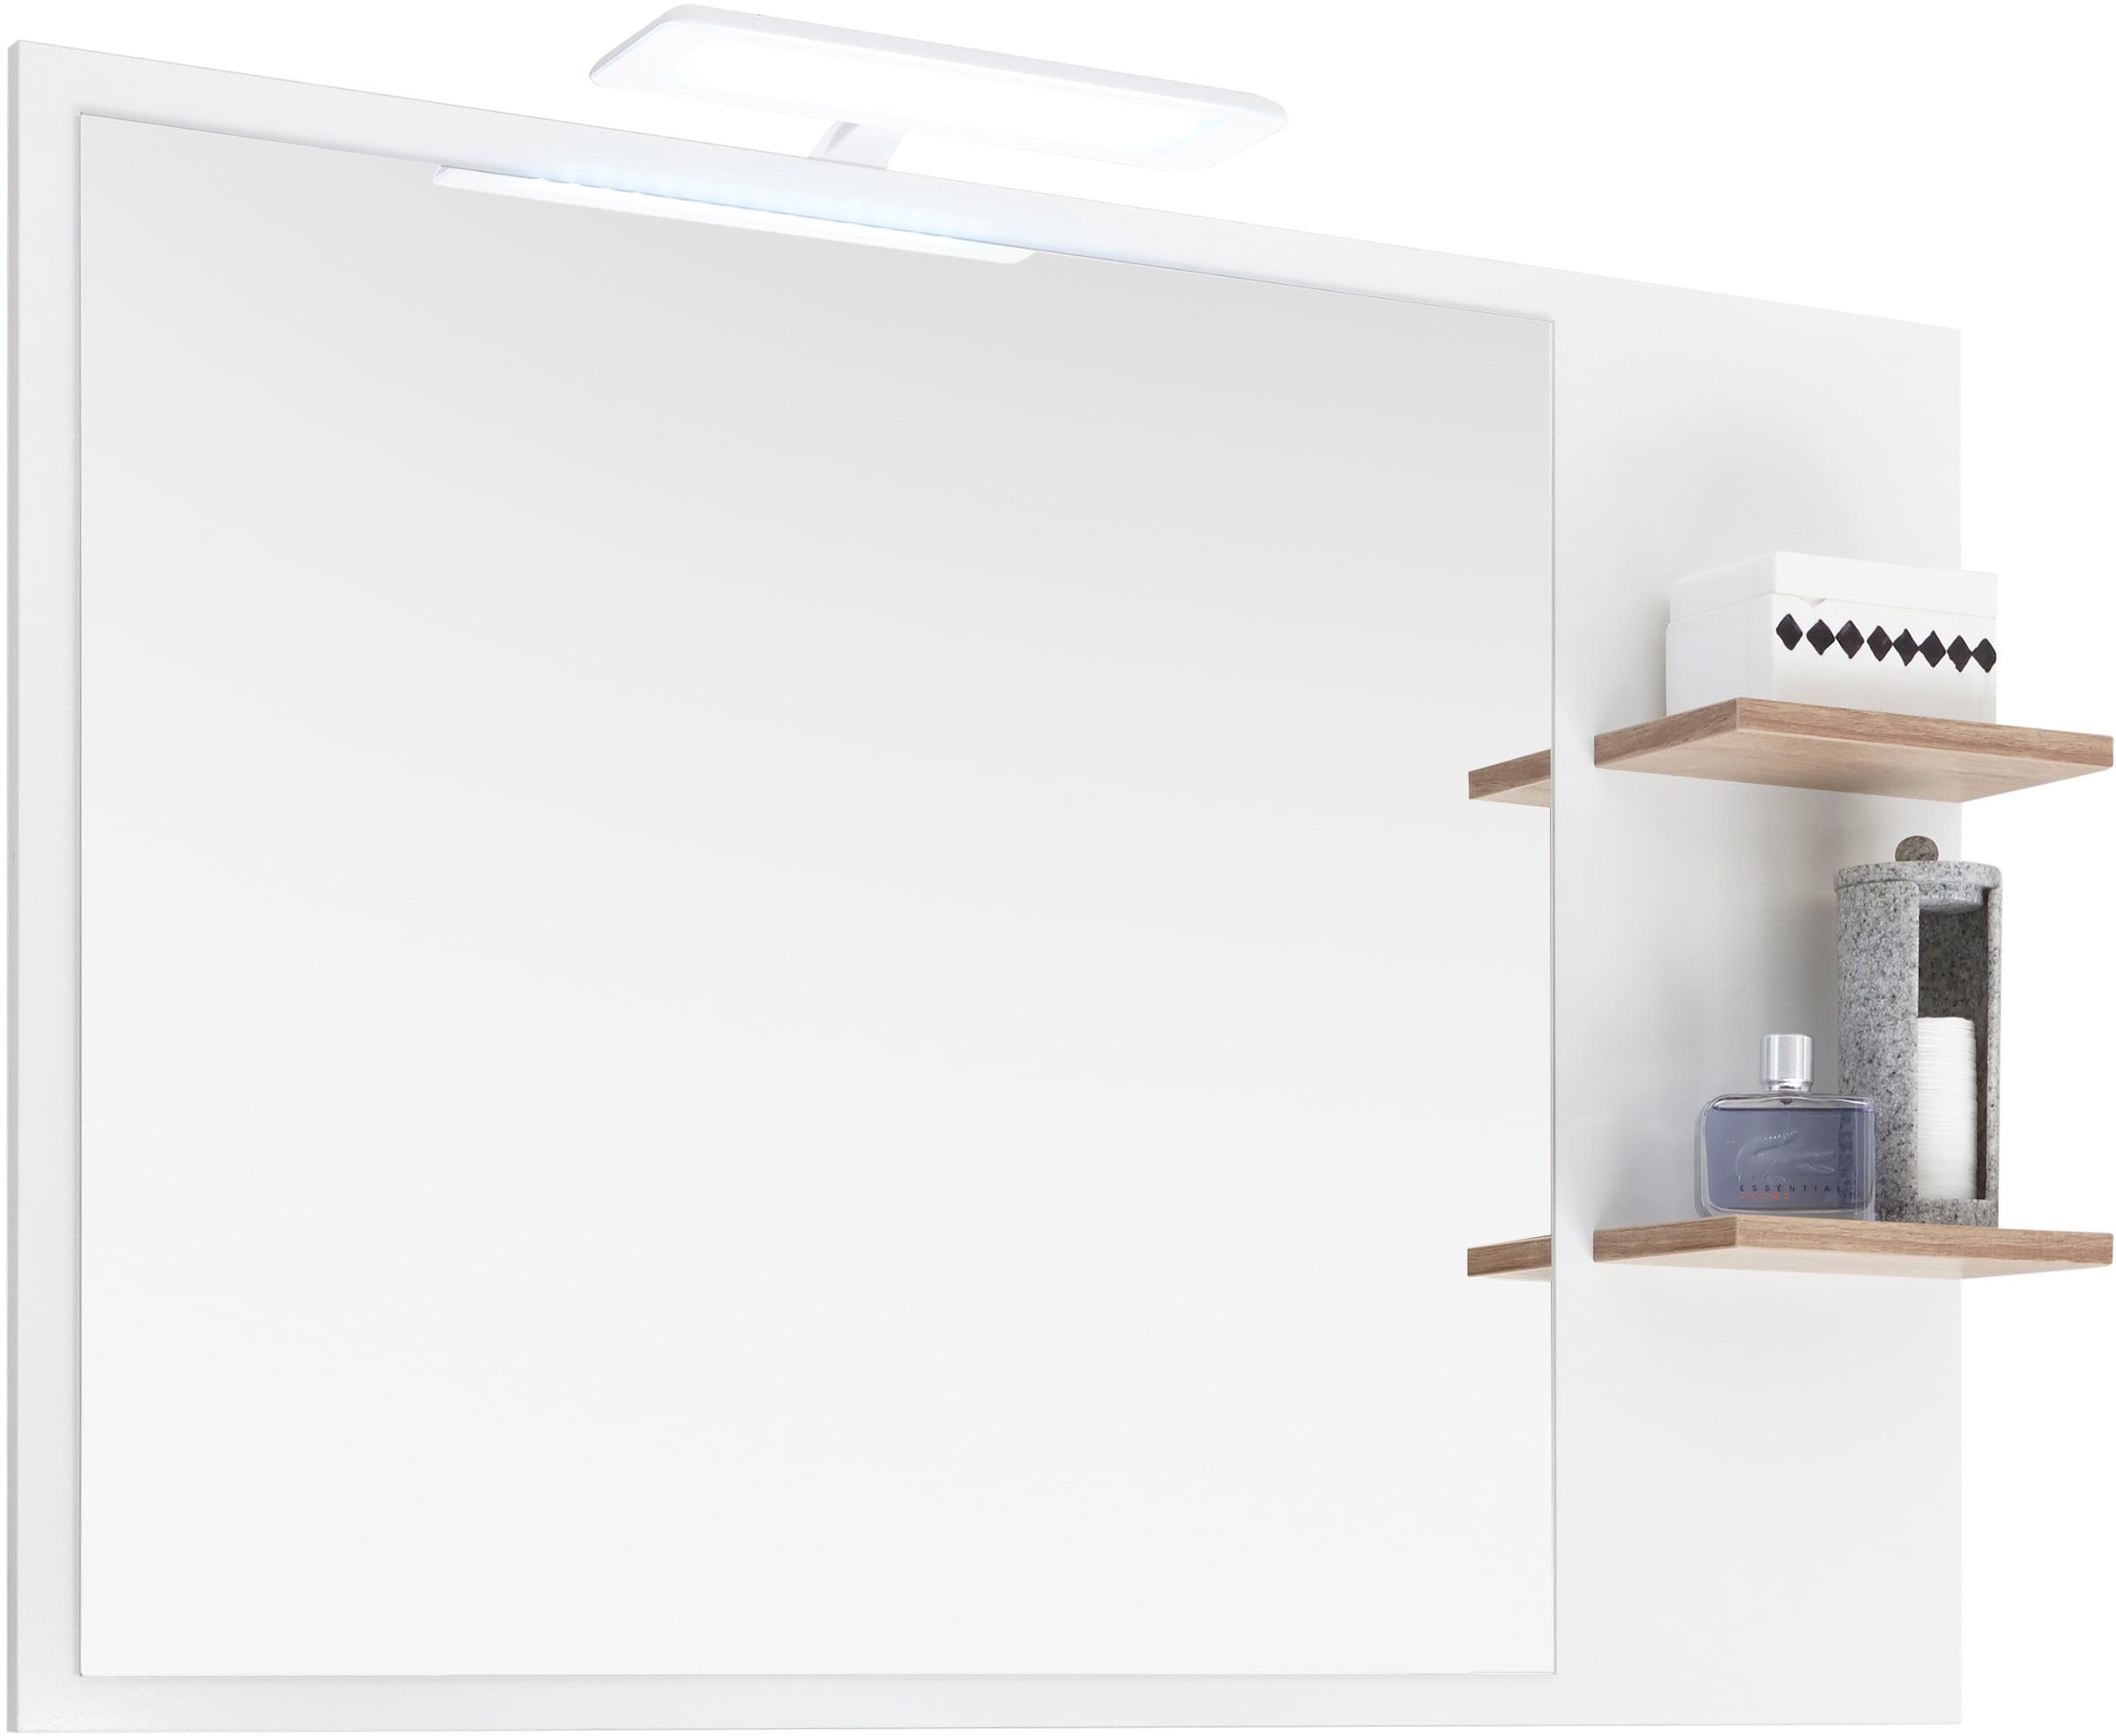 Saphir LED Spiegelleuchte »Quickset LED-Aufsatzleuchte für Spiegel o. Spiegelschrank in Weiß«, Badlampe 30 cm breit, Lichtfarbe kaltweiß, Kunststoff, 435 LM, 230V